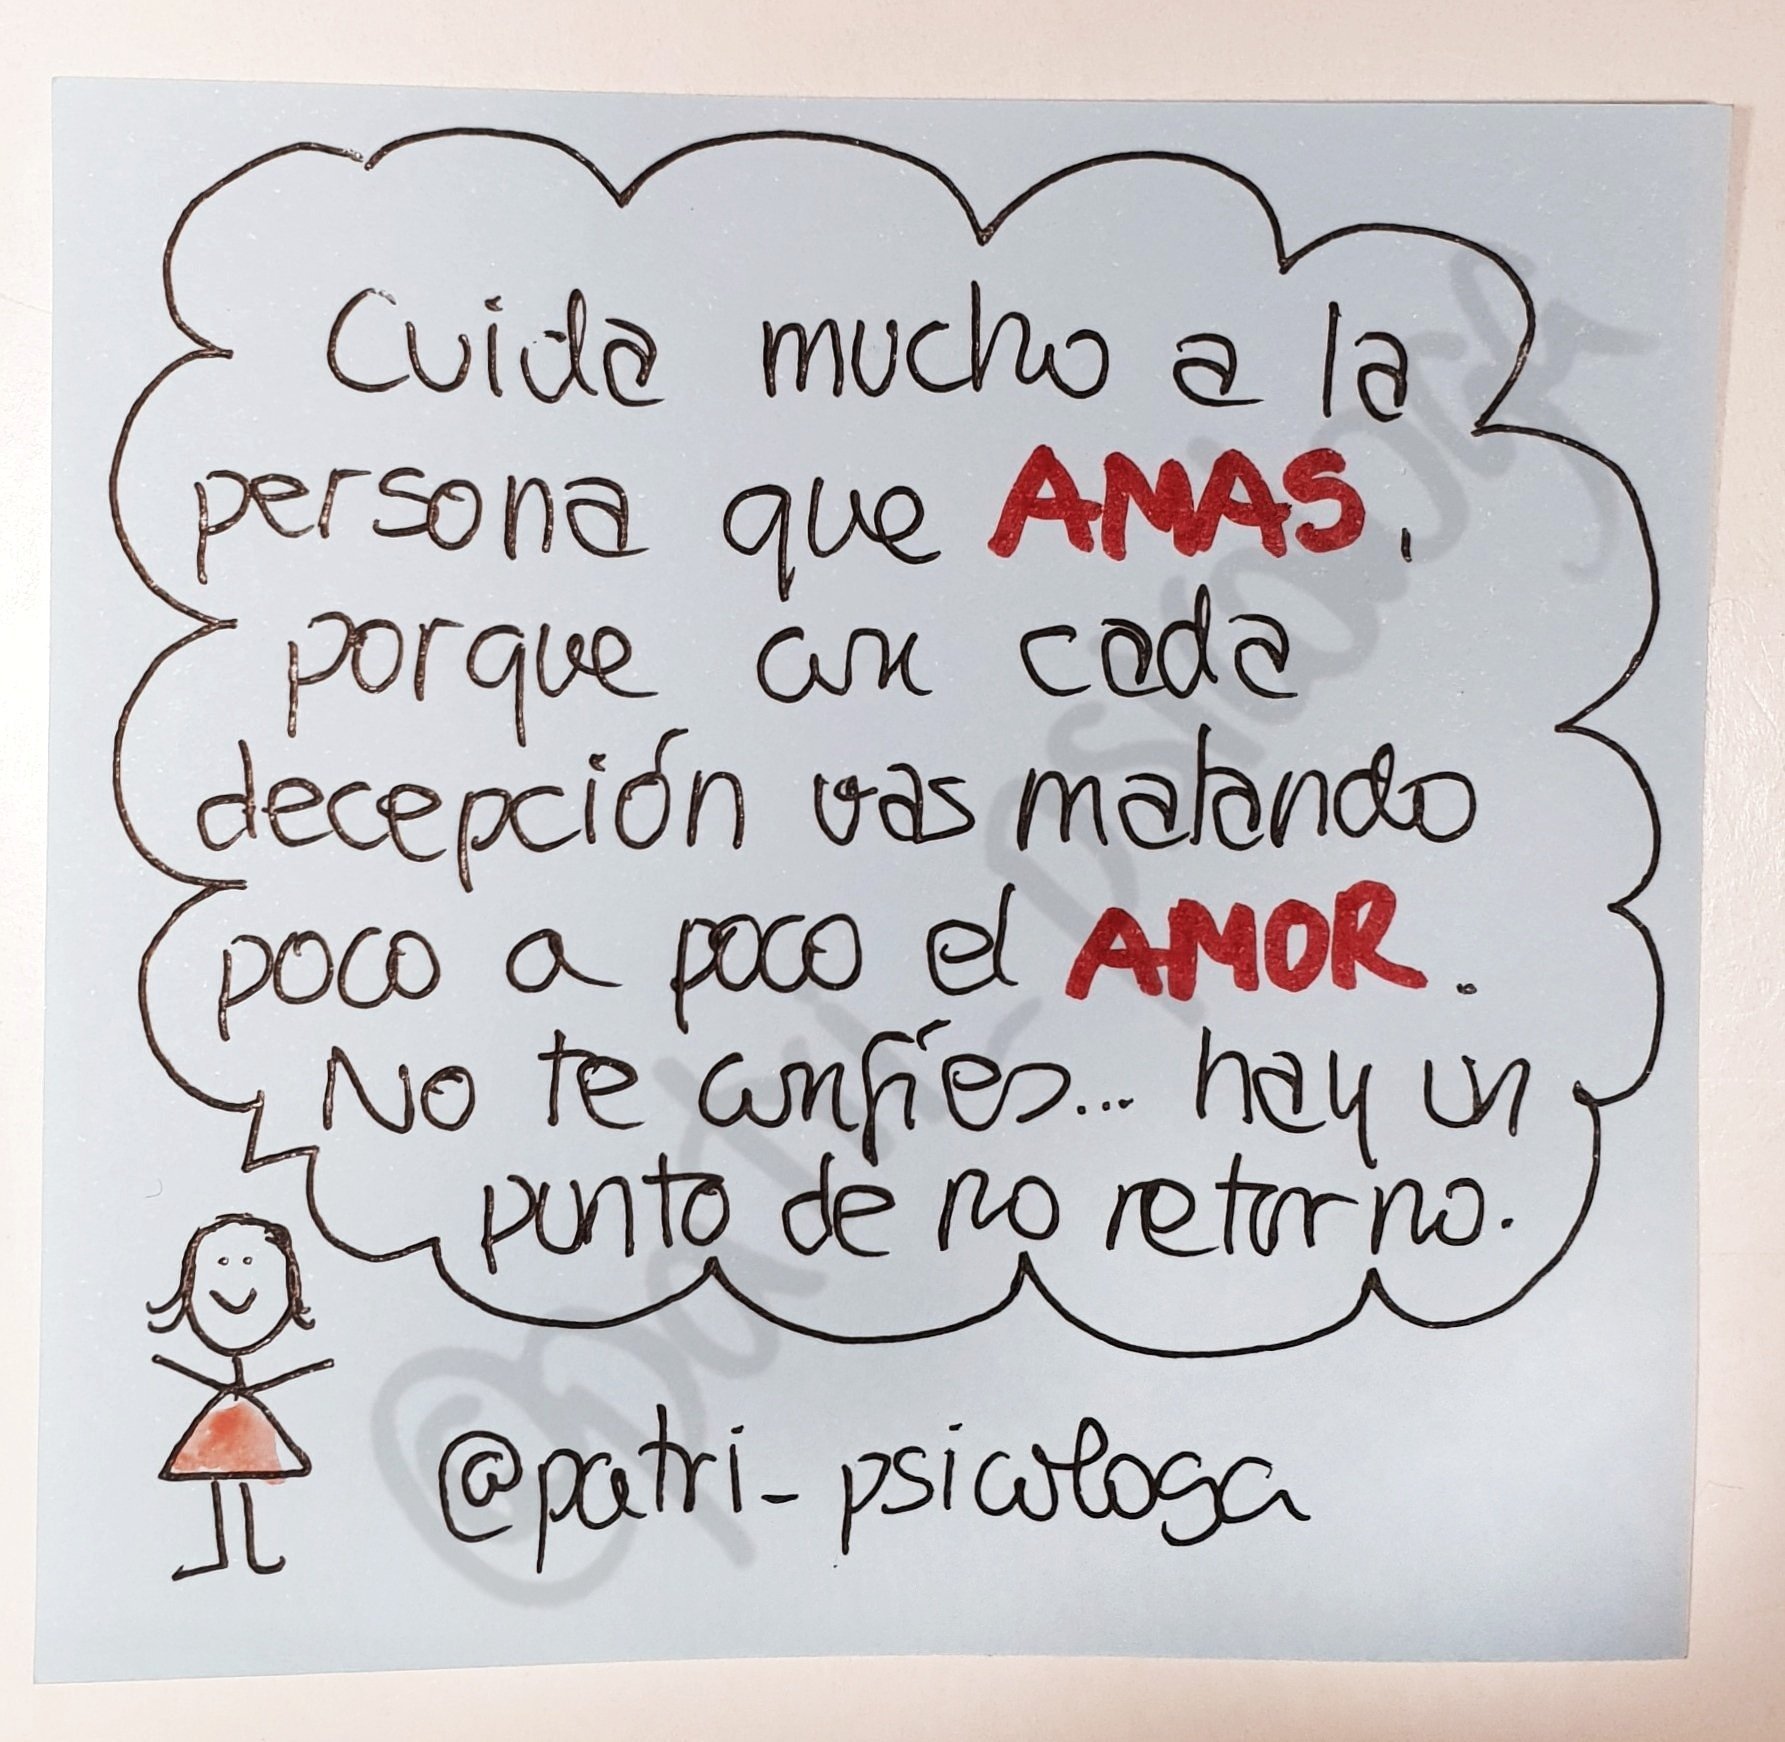 Patricia Ramírez on Twitter: "Cuida mucho a la persona que amas, porque con  cada decepción vas matando poco a poco el amor. No te confíes...hay un  punto de no retorno. https://t.co/3Jow734pXw" /